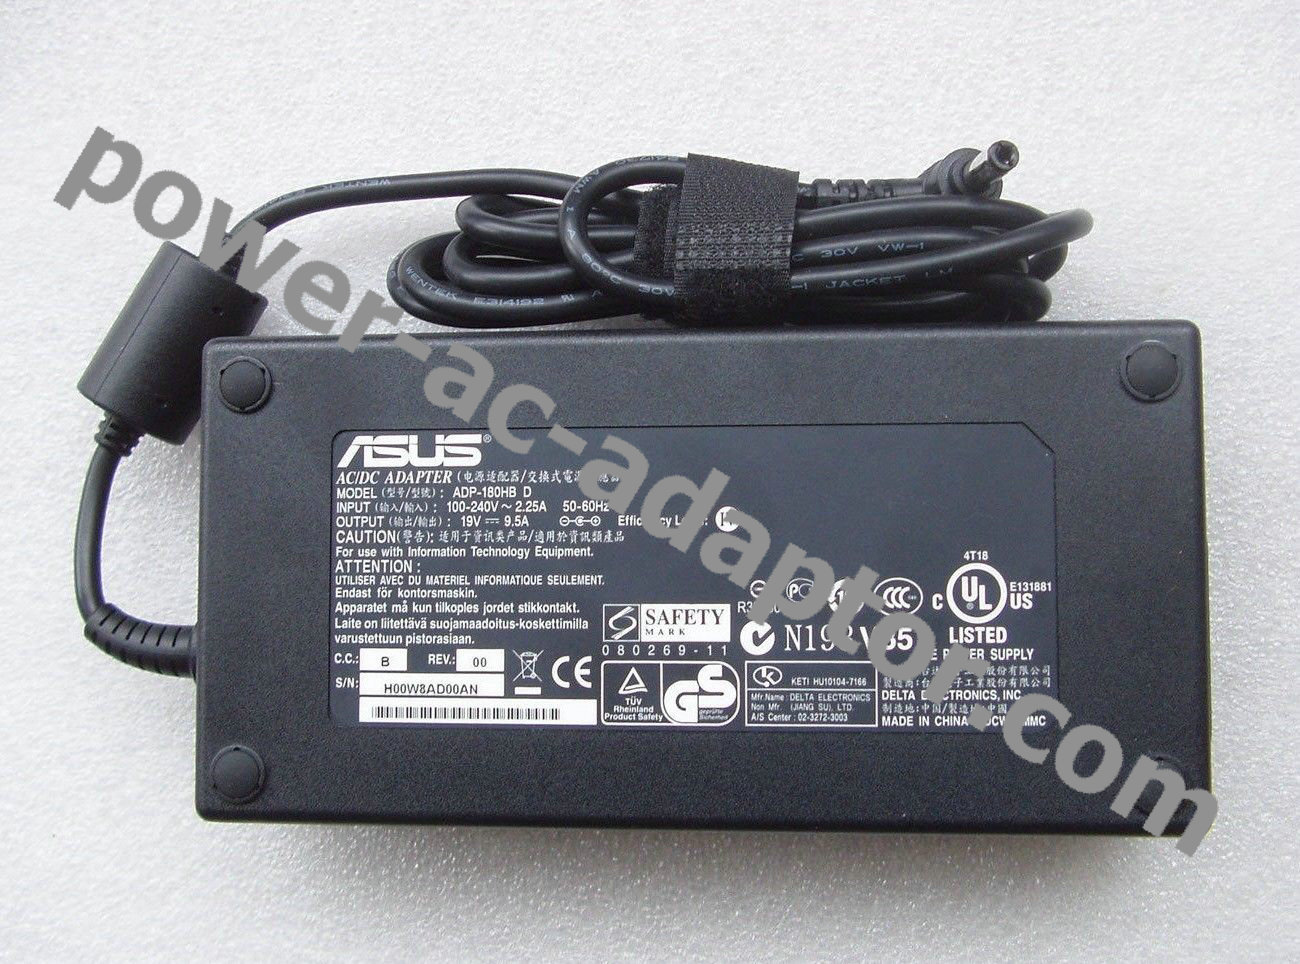 19V 9.5A ASUS G750JW-QS71-CB G750JW-B AC Adapter Power Supply